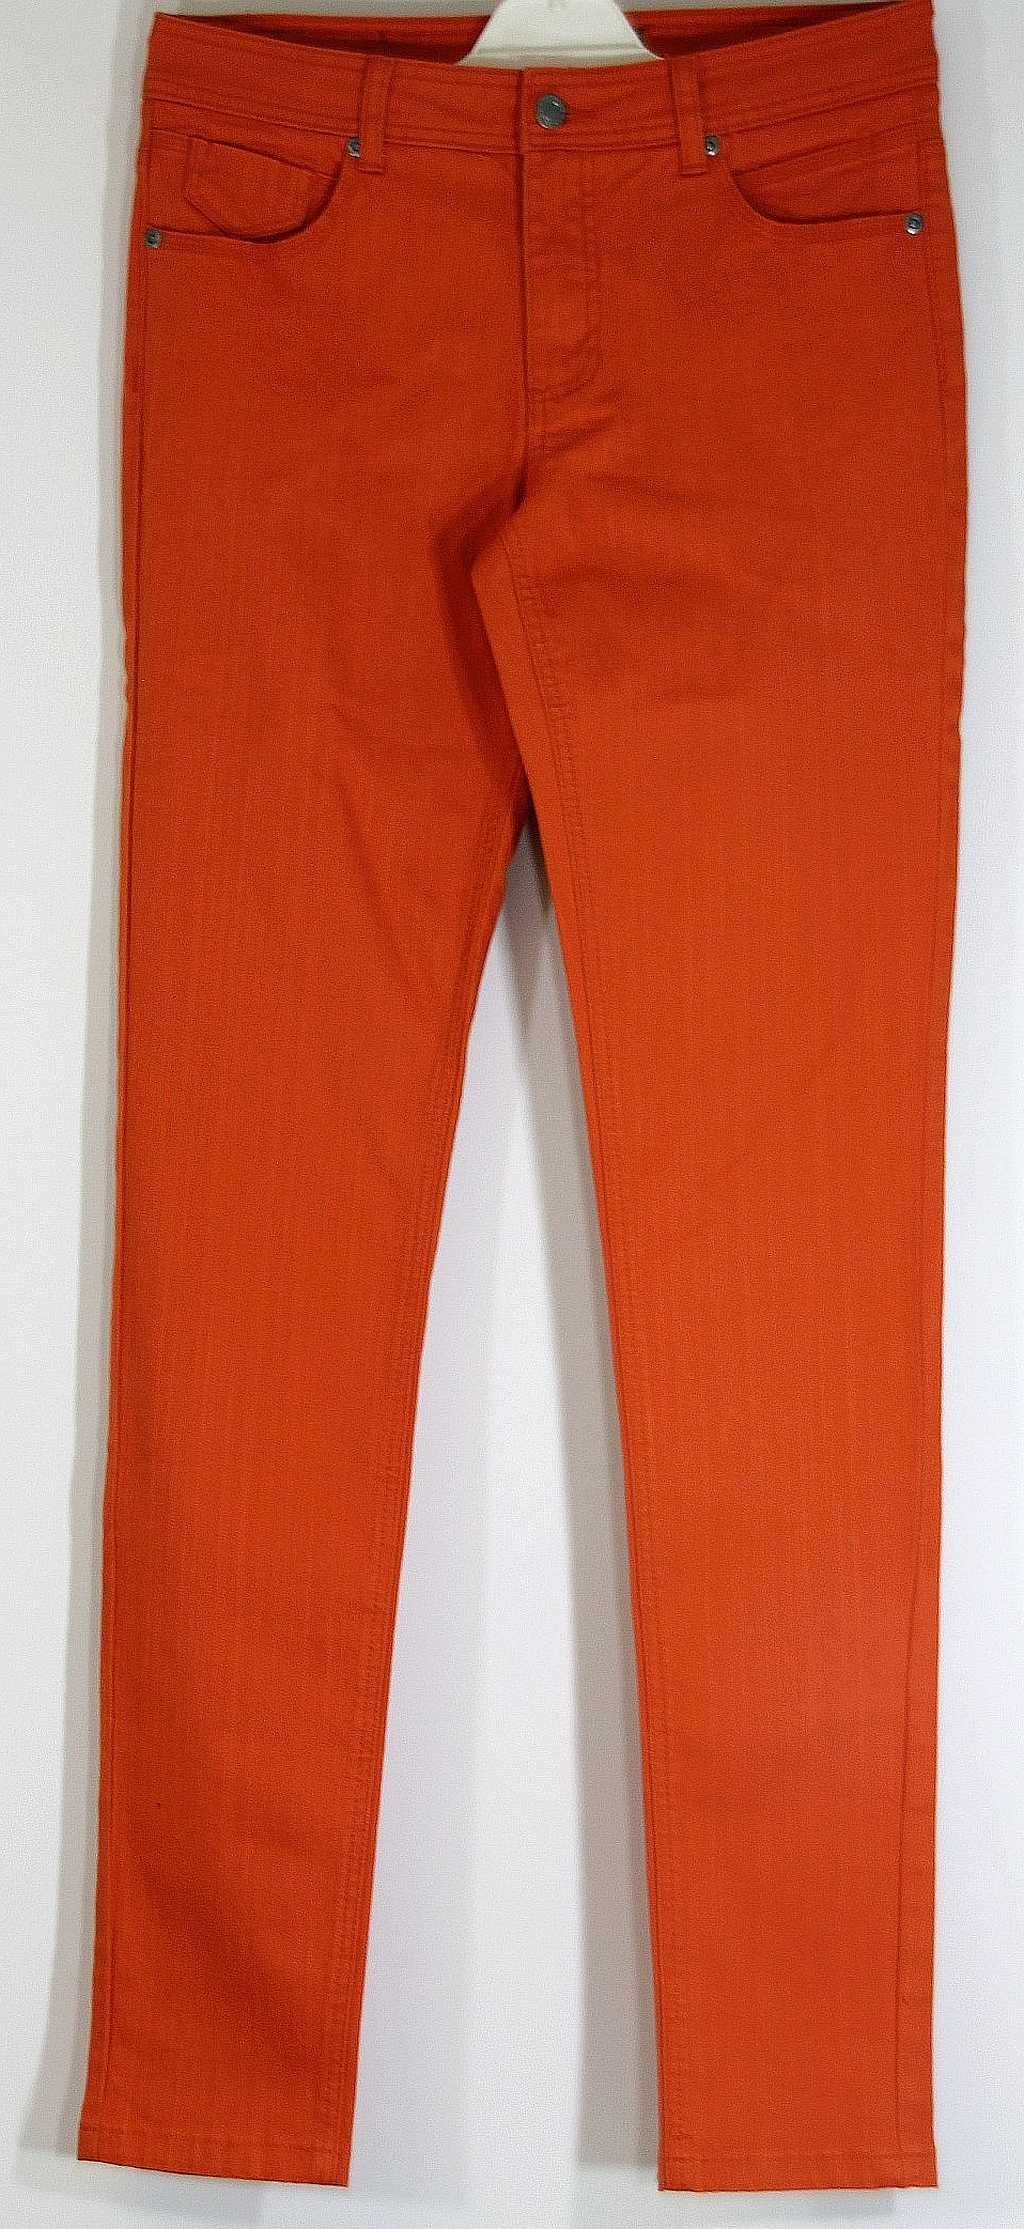 Spodnie orange rurki stretch Bawełna Rozmiar 36